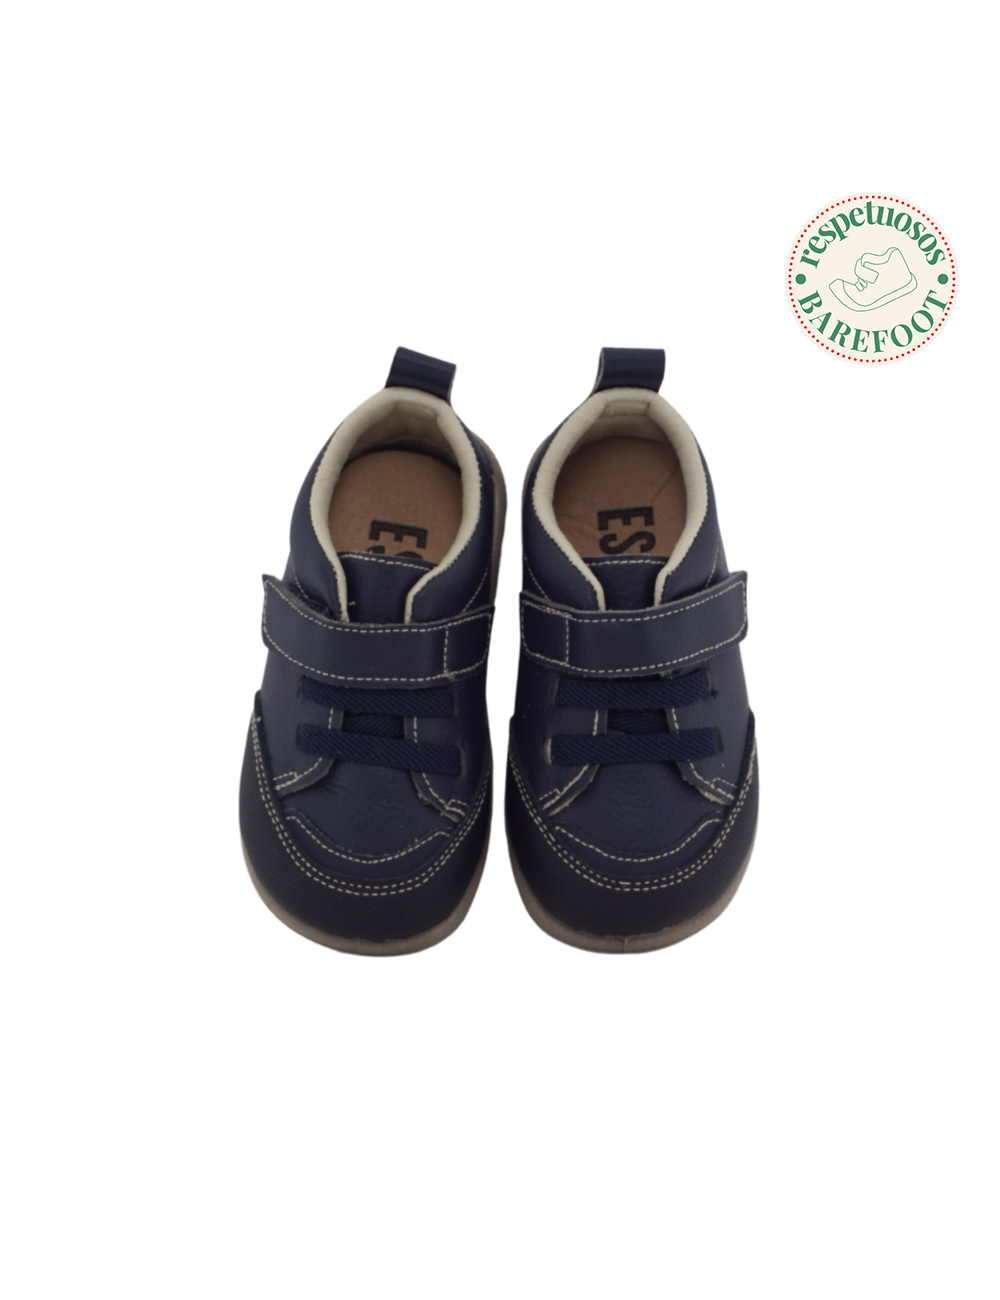 La tienda online Calzado Barefoot ofrece calzado infantil respetuoso para  el desarrollo natural de los pies